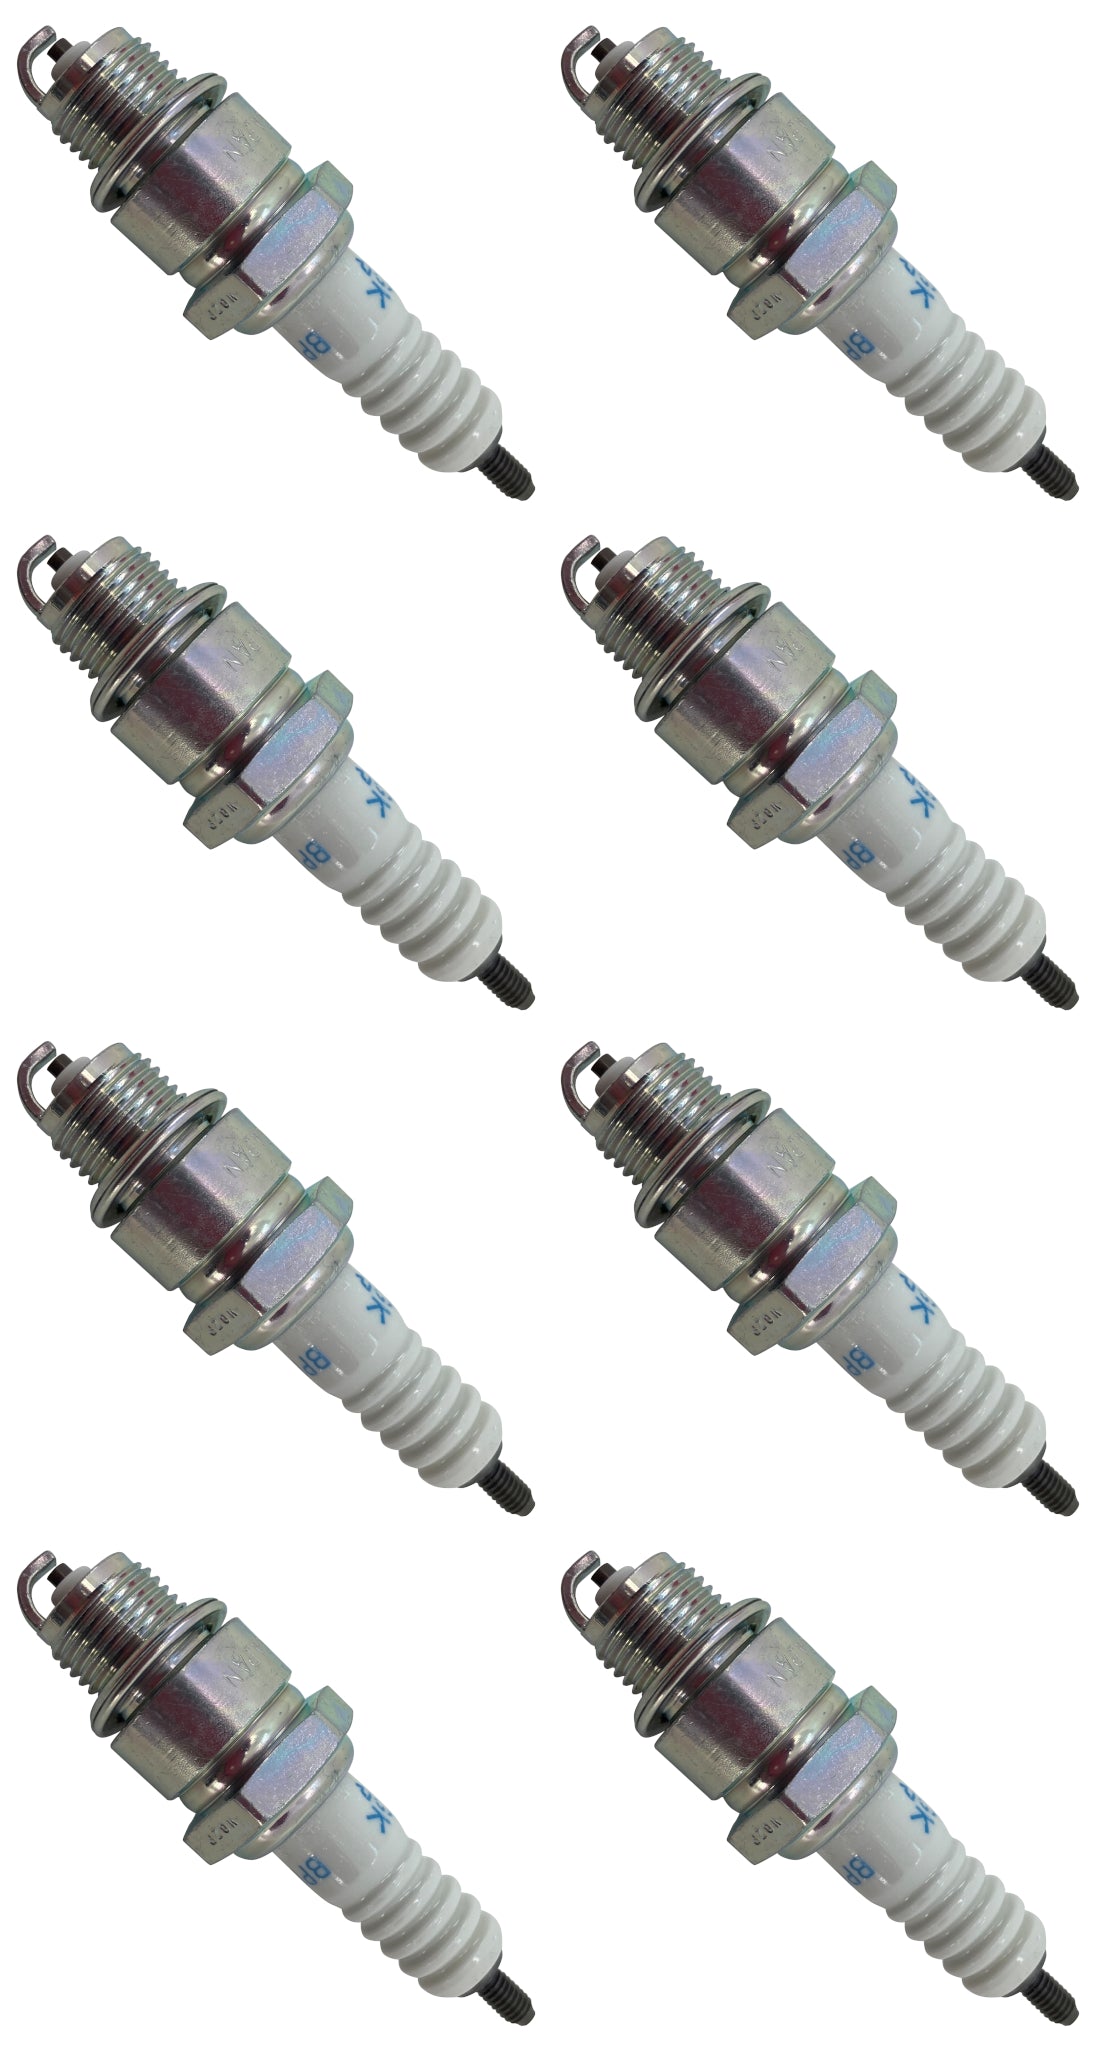 Honda Original Equipment Spark Plug (Pack of 8) - 98076-56717